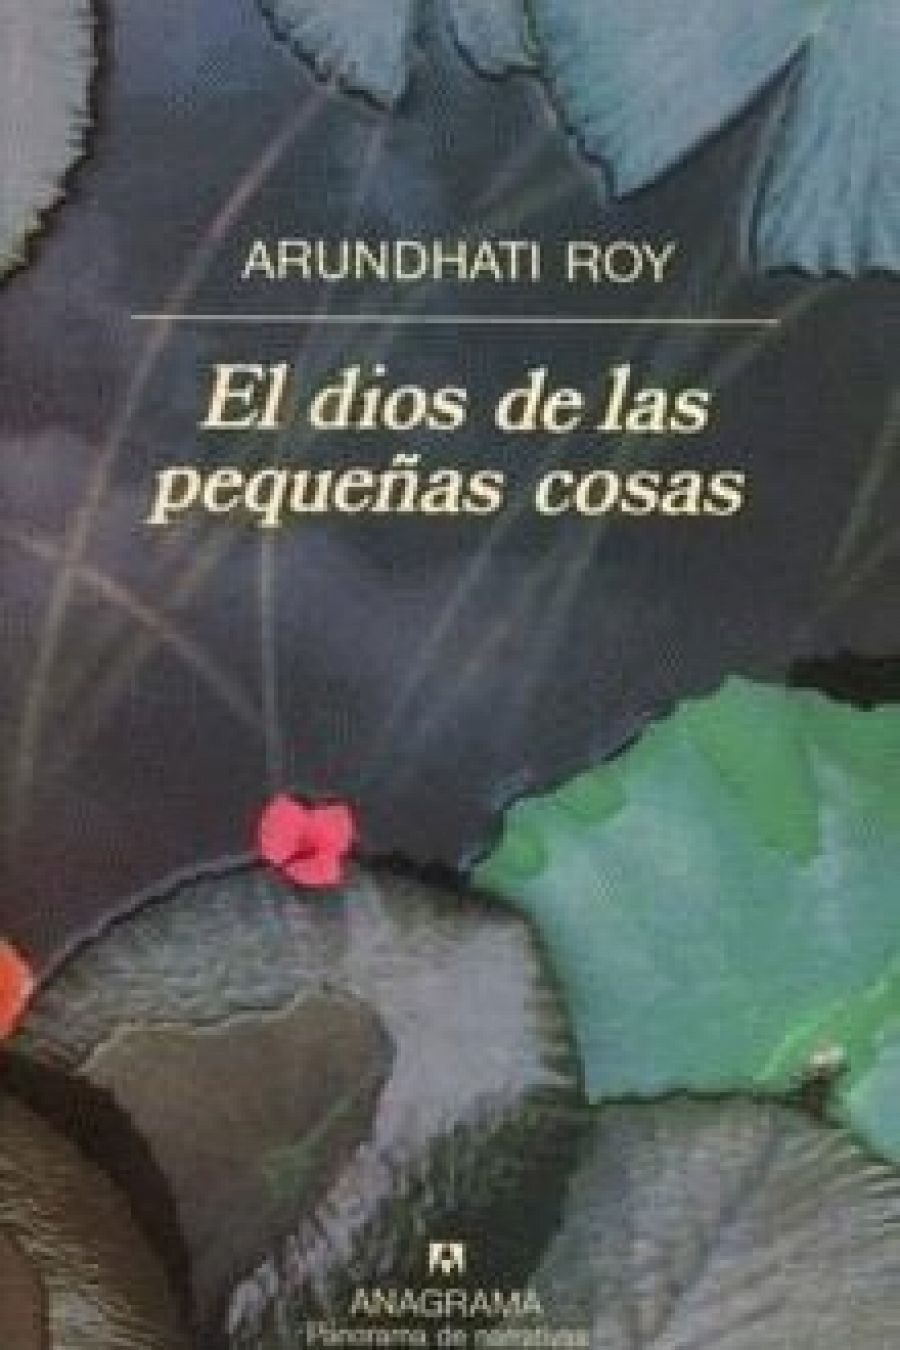  Arundhati Roy, 